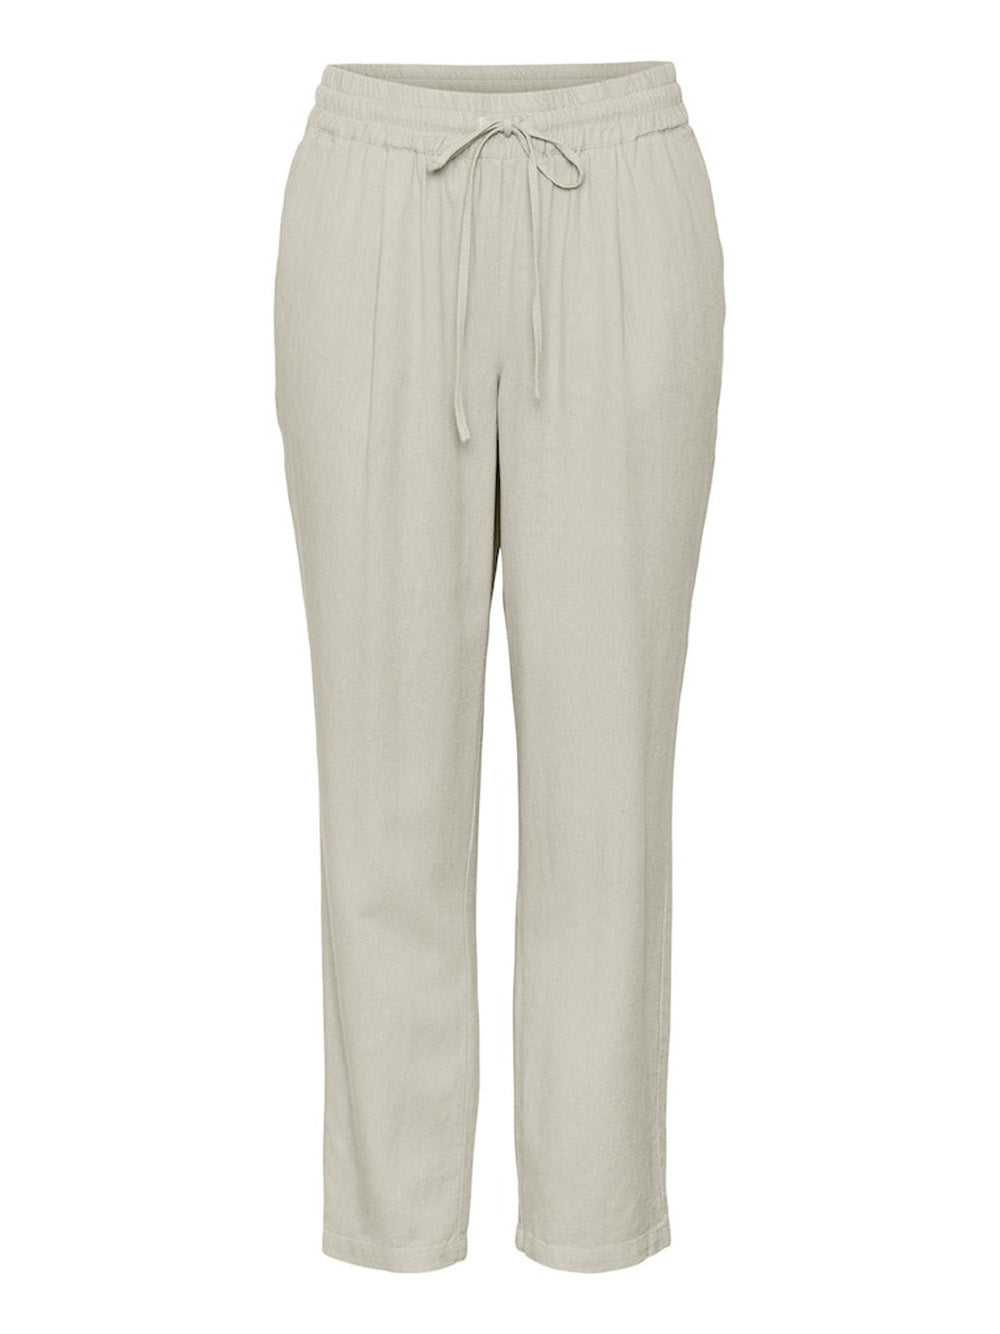 VERO MODA Pantalone Donna - Grigio modello 10279691